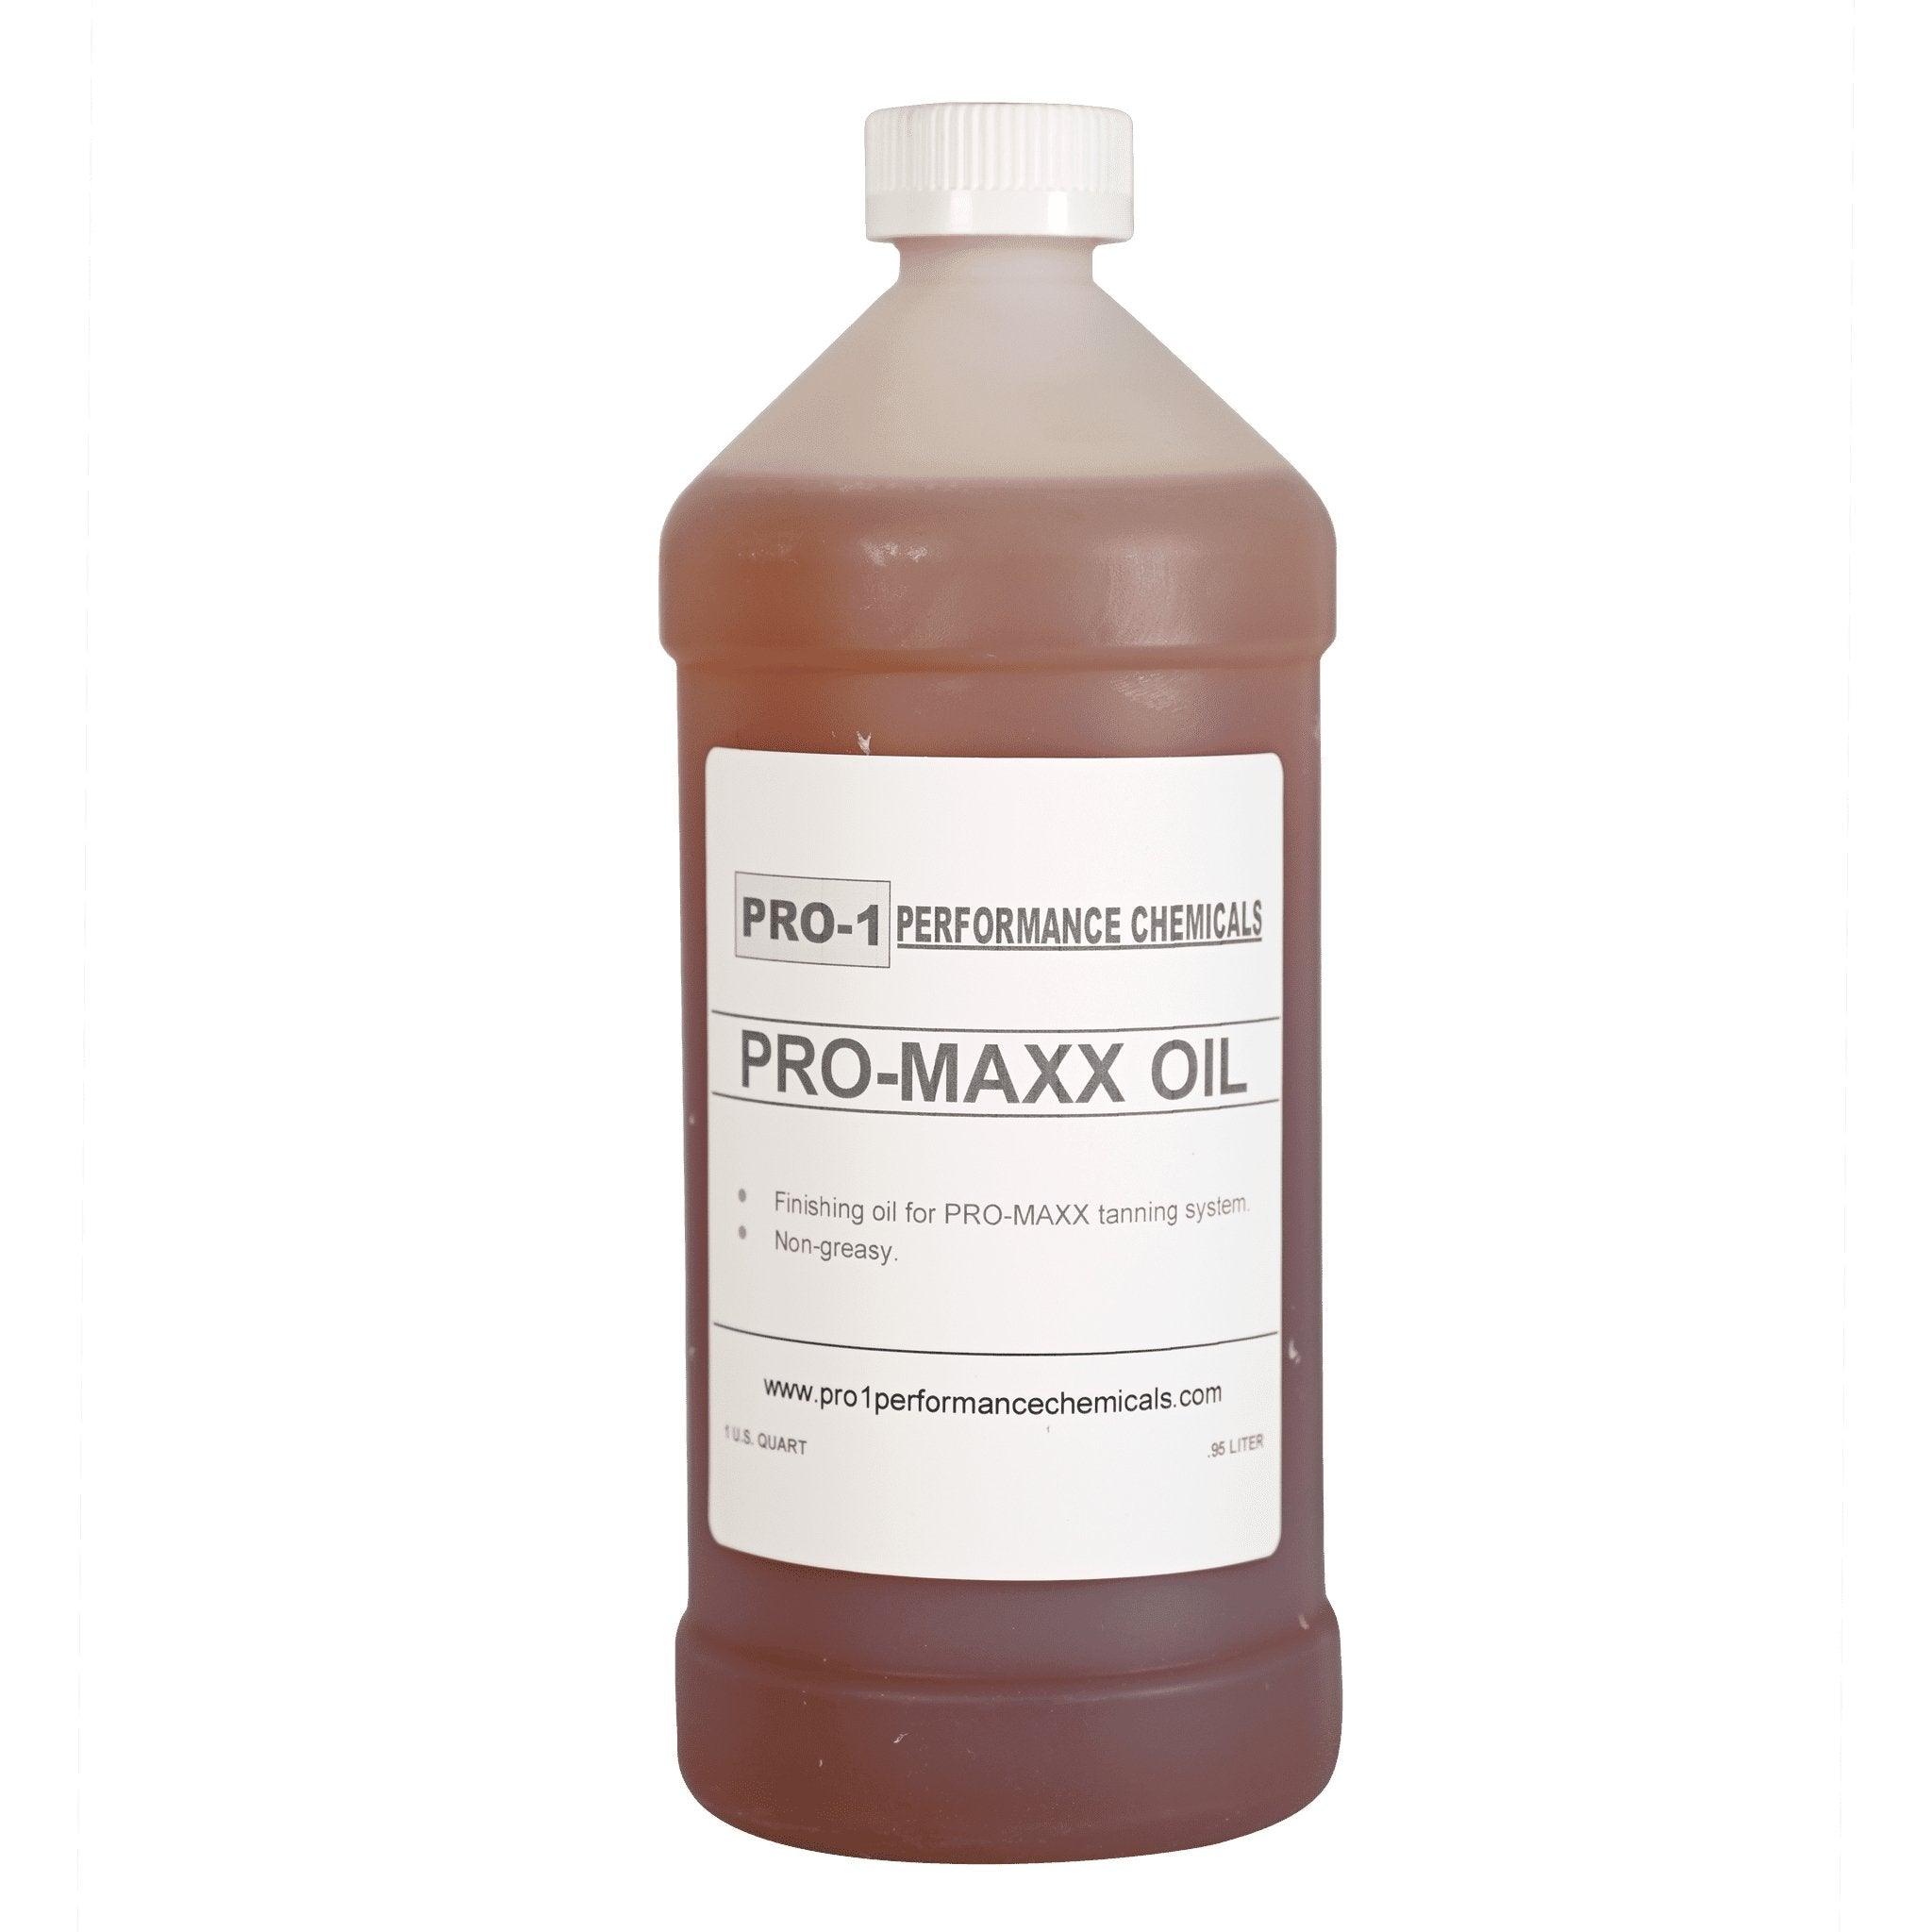 Pro-1 Pro-Maxx Oil - Matuska Taxidermy Supply Company